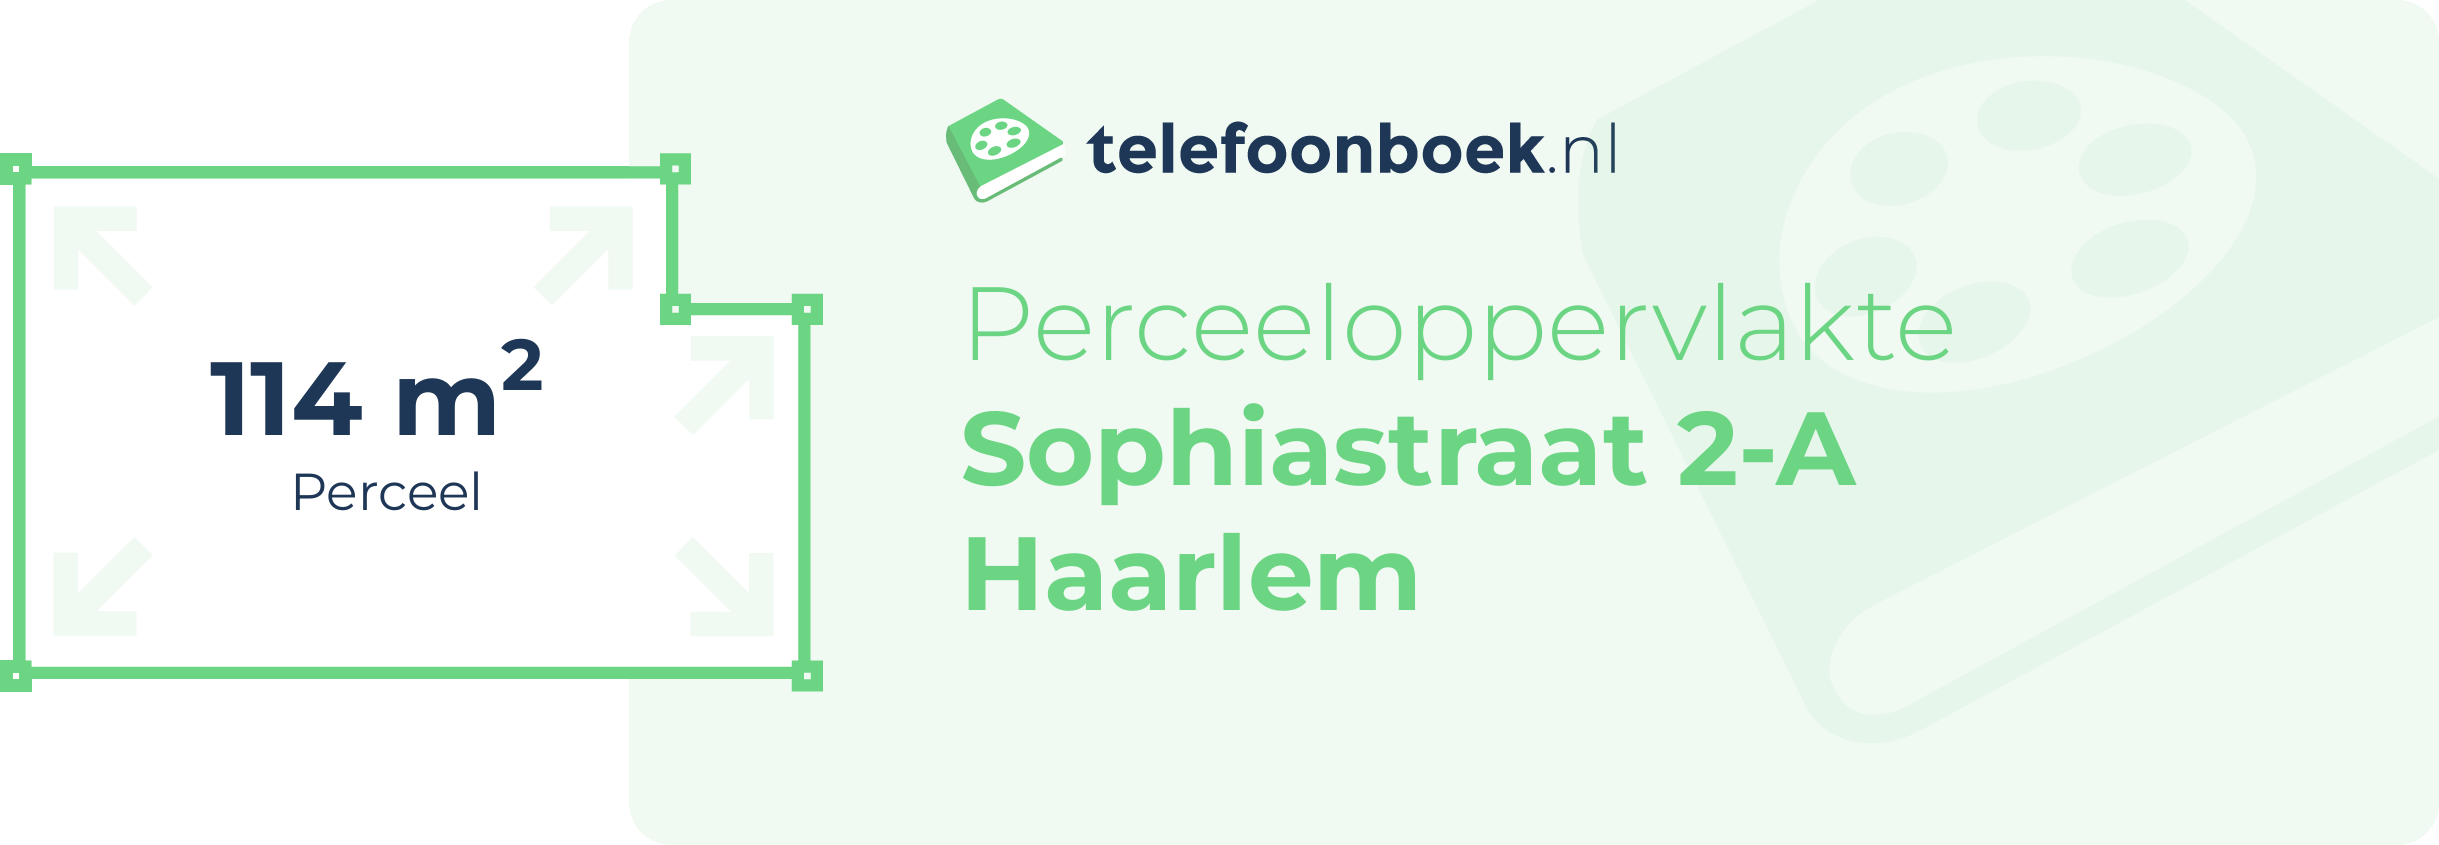 Perceeloppervlakte Sophiastraat 2-A Haarlem